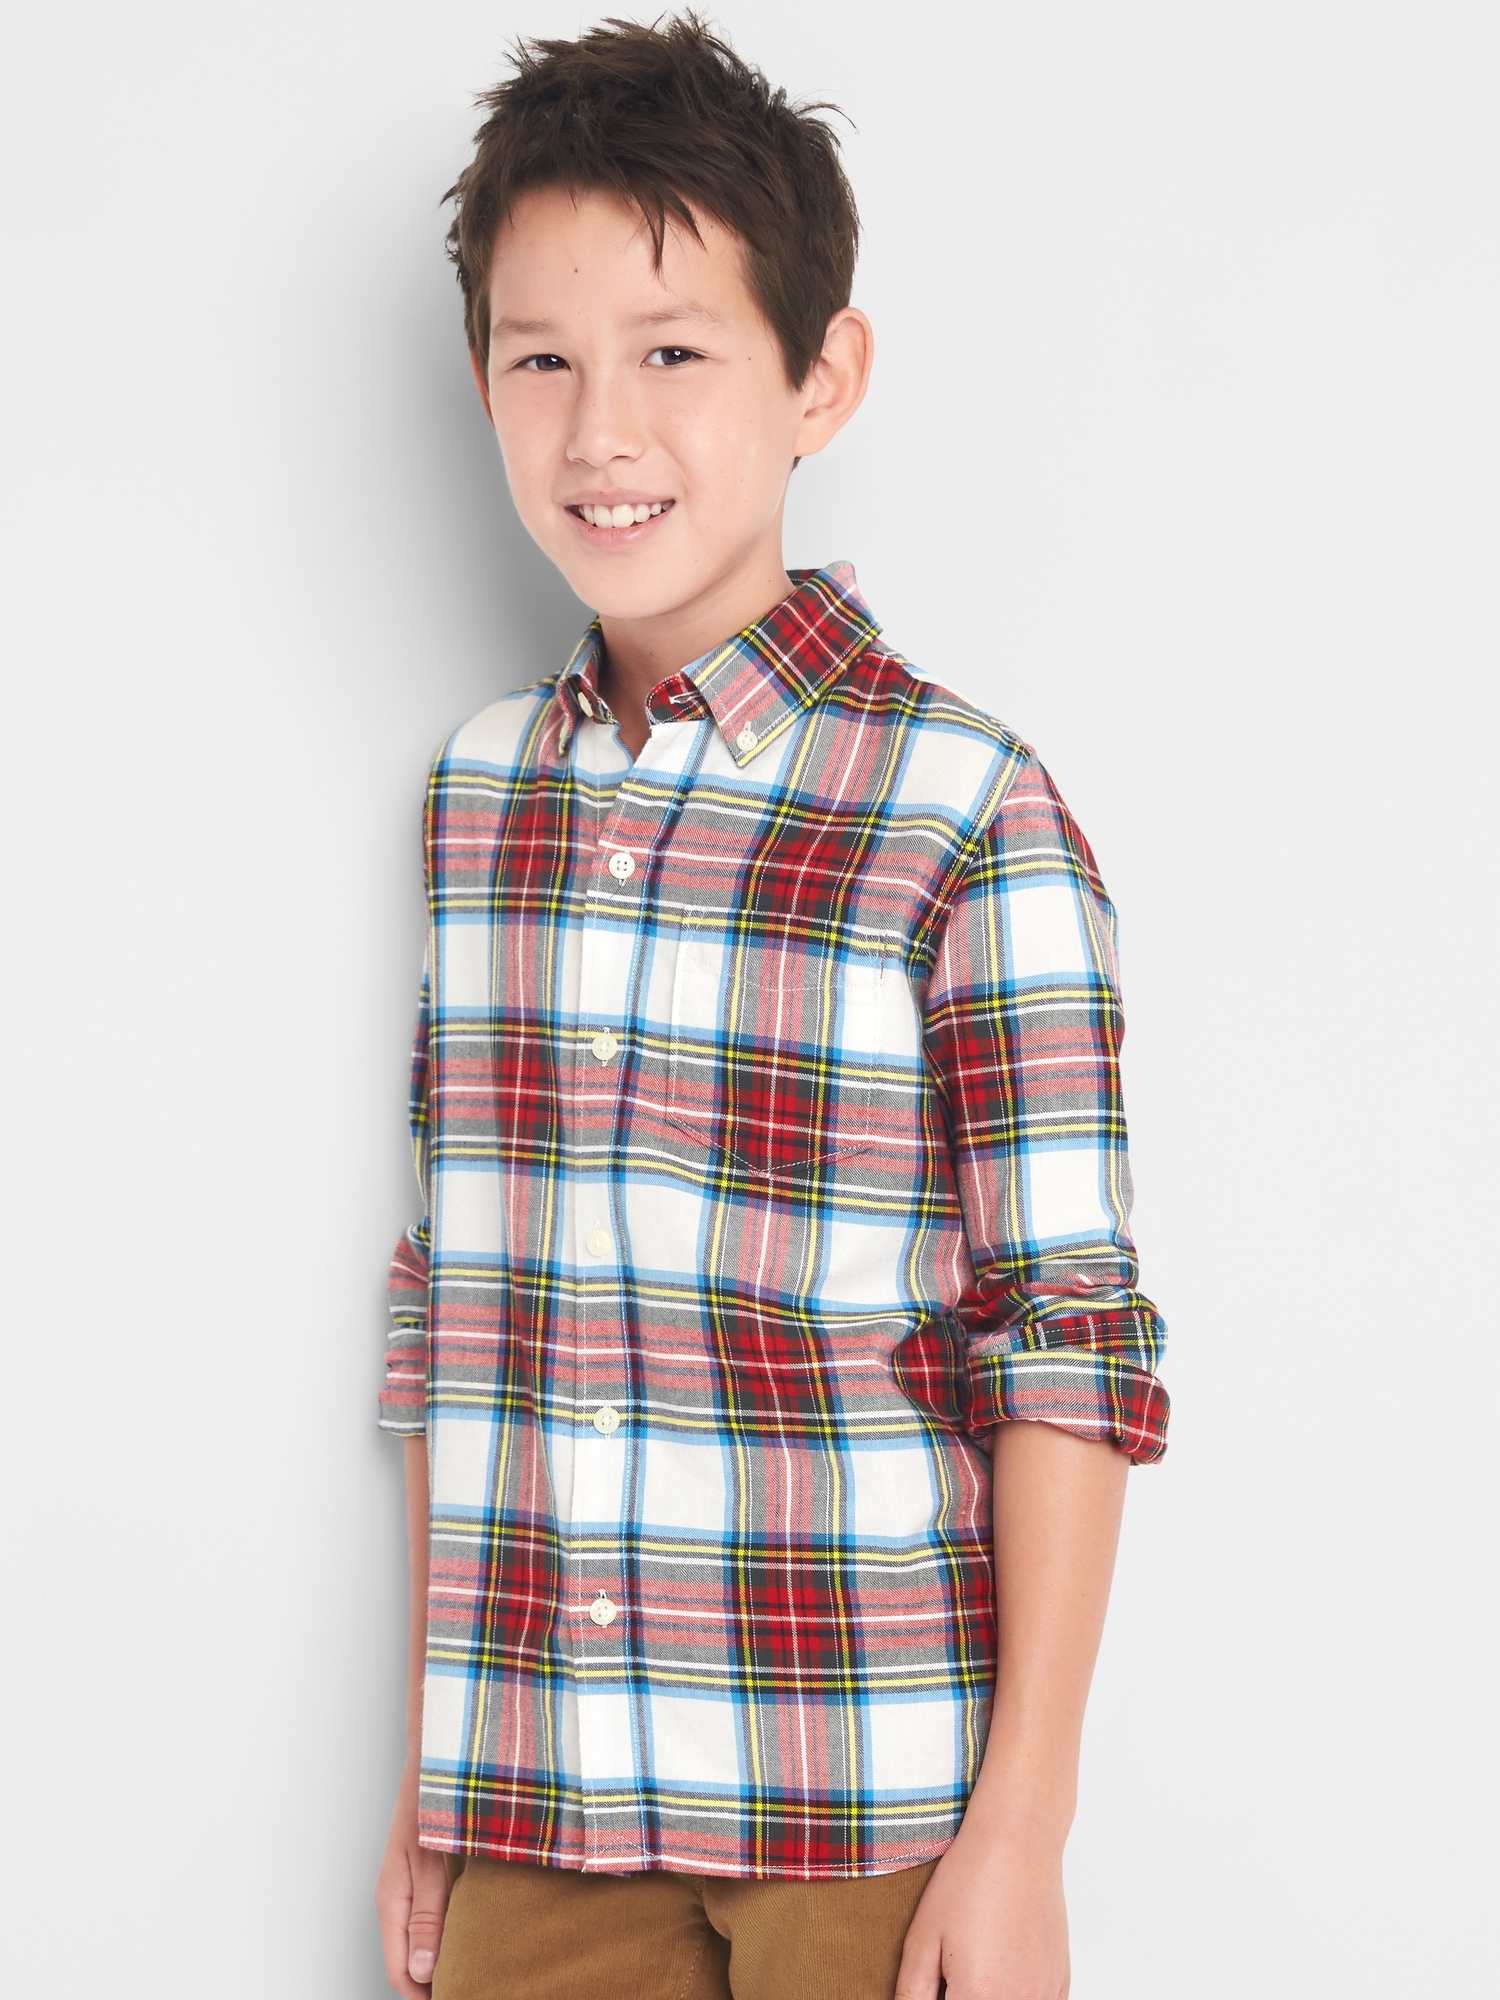 Plaid flannel button-down shirt | Gap